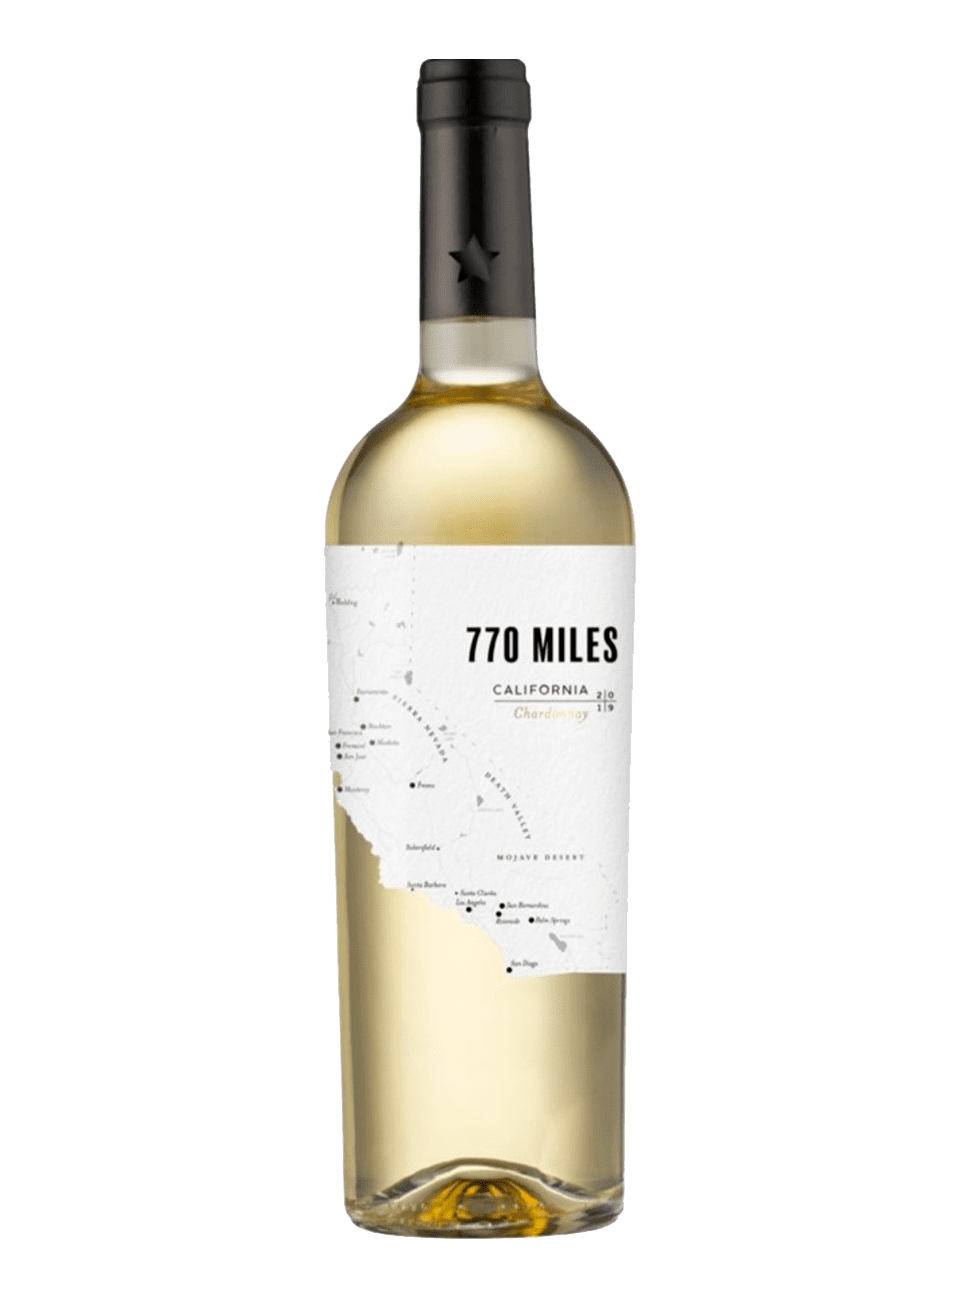 770 miles zinfandel. Вино "770 Miles" Chardonnay. Вино 770 миль Шардоне. Вино 770 миль Шардоне белое. Вино 770 Miles California.